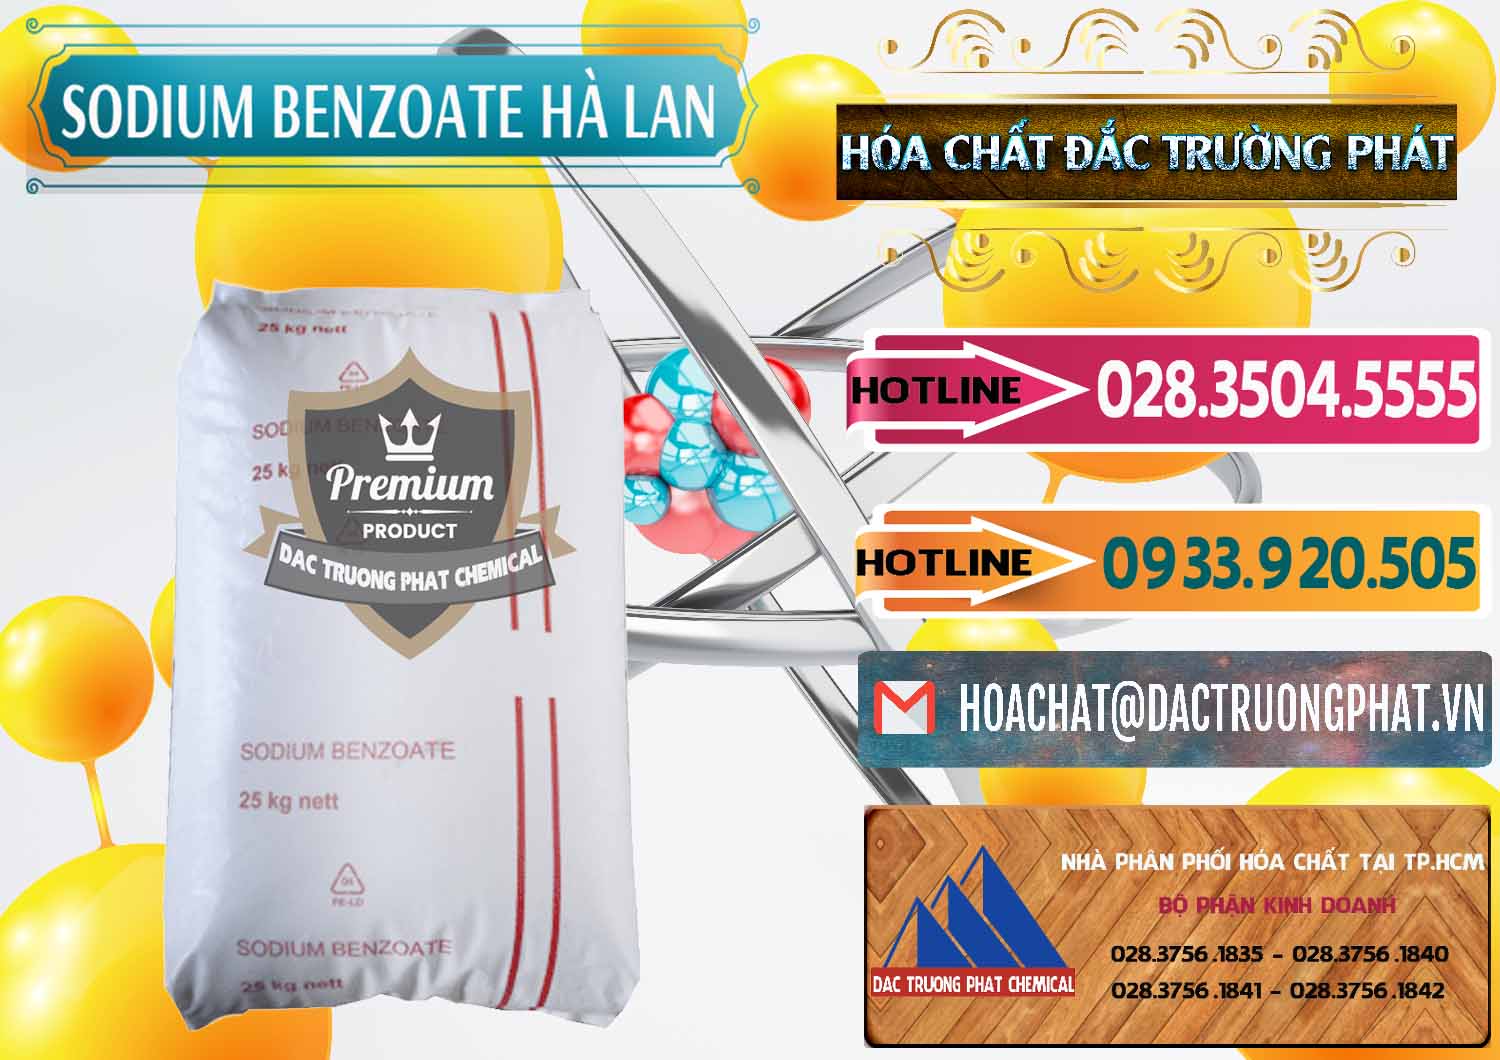 Cung ứng và bán Sodium Benzoate - Mốc Bột Chữ Cam Hà Lan Netherlands - 0360 - Nhà phân phối và cung cấp hóa chất tại TP.HCM - dactruongphat.vn